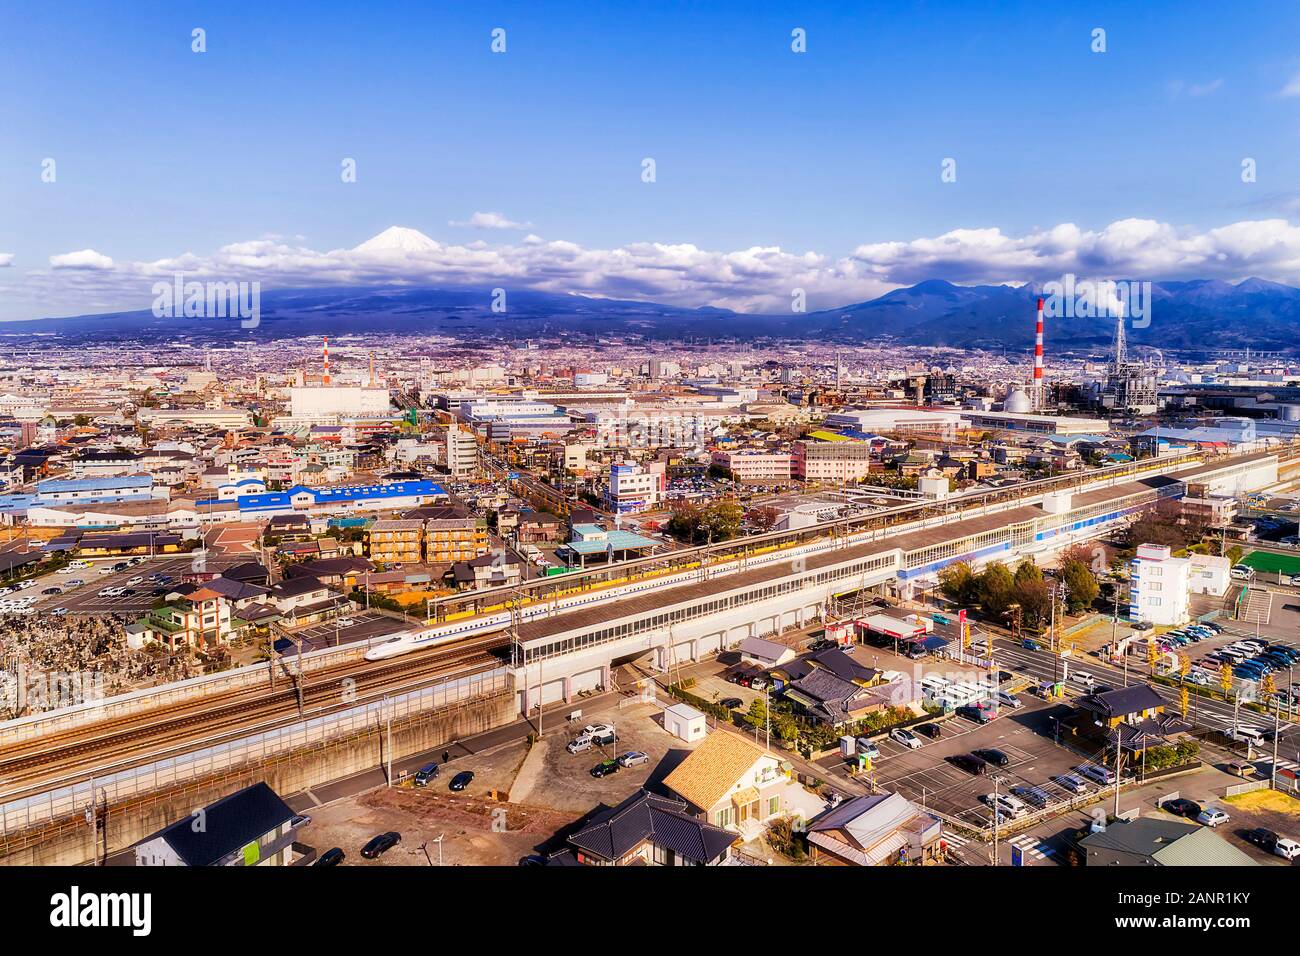 Shin-Fuji Bahnhof für Hochgeschwindigkeitszüge mit Blick auf die majestätischen Berg Fuji in Japan an einem sonnigen Tag. Stockfoto